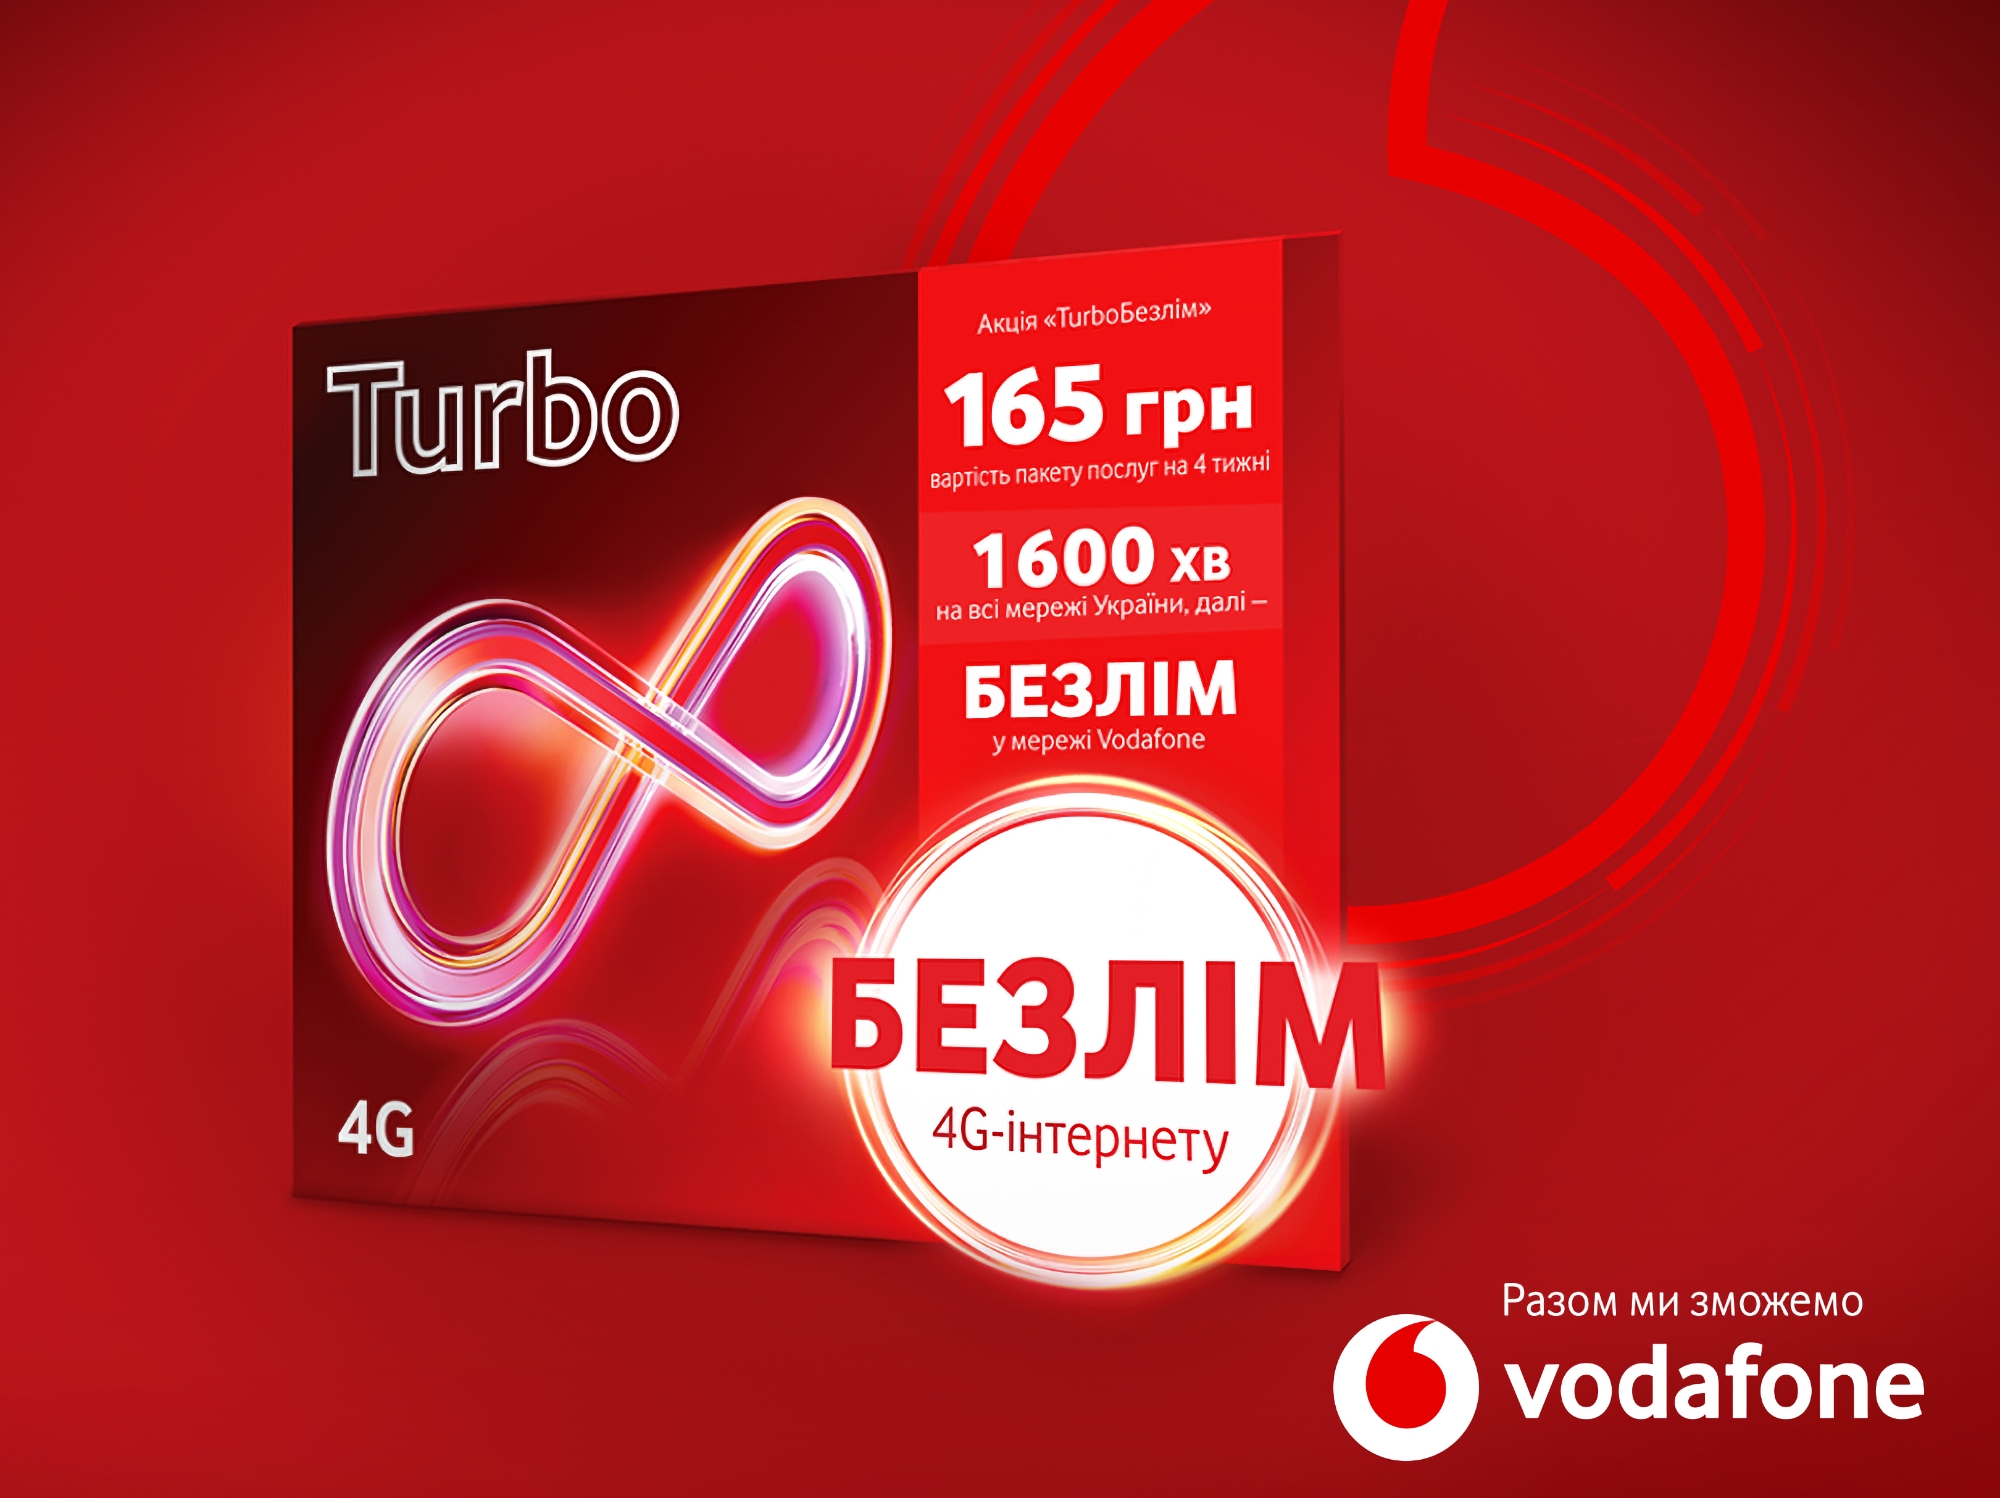 [Оновлено] Майже безлімітний інтернет та 1600 хв за 165 грн: Vodafone запустив новий тариф Turbo 